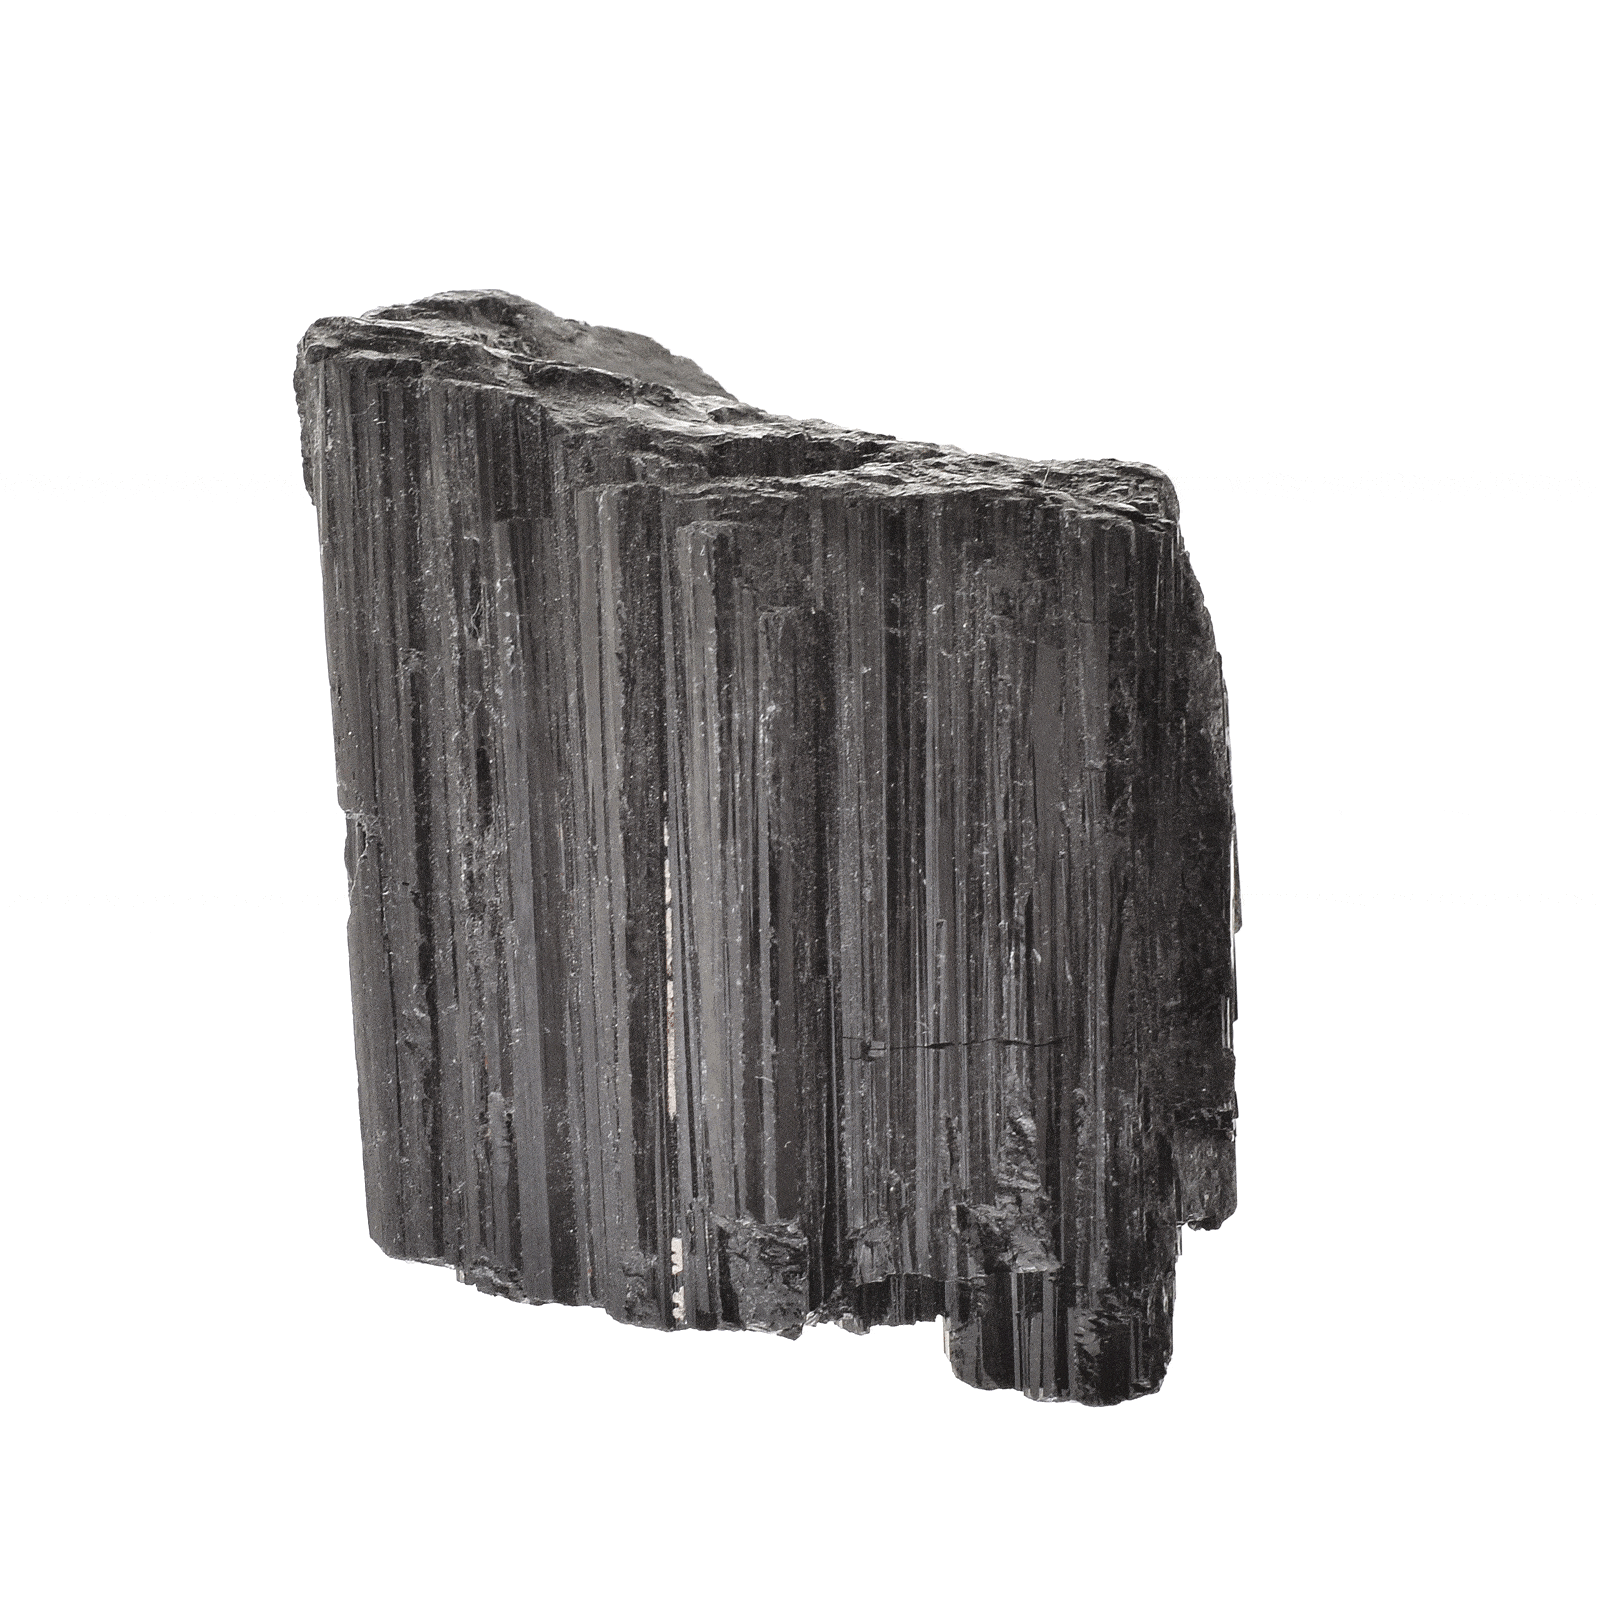 Ακατέργαστο κομμάτι φυσικής πέτρας μαύρου Τουρμαλίνη, μεγέθους 4,5cm. Αγοράστε online shop.